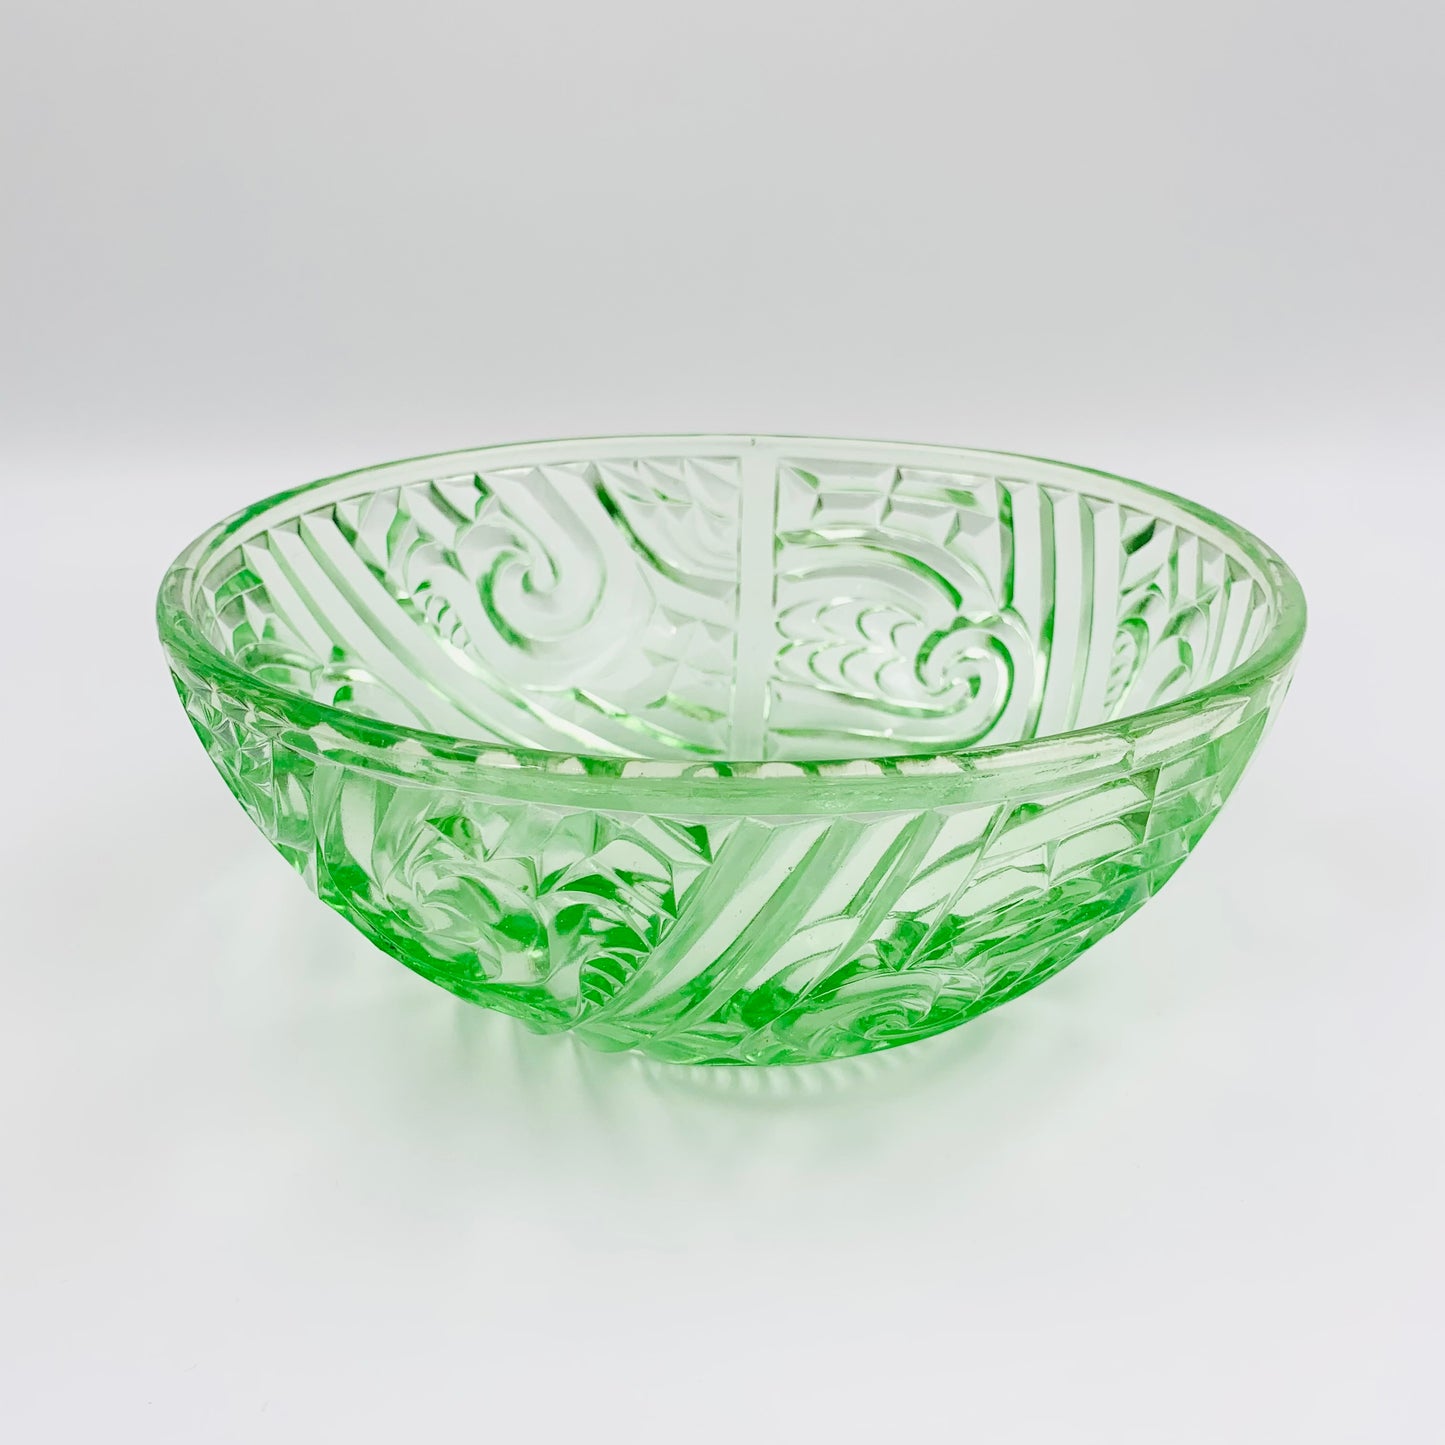 Antique green depression pressed glass salad/fruit bowl